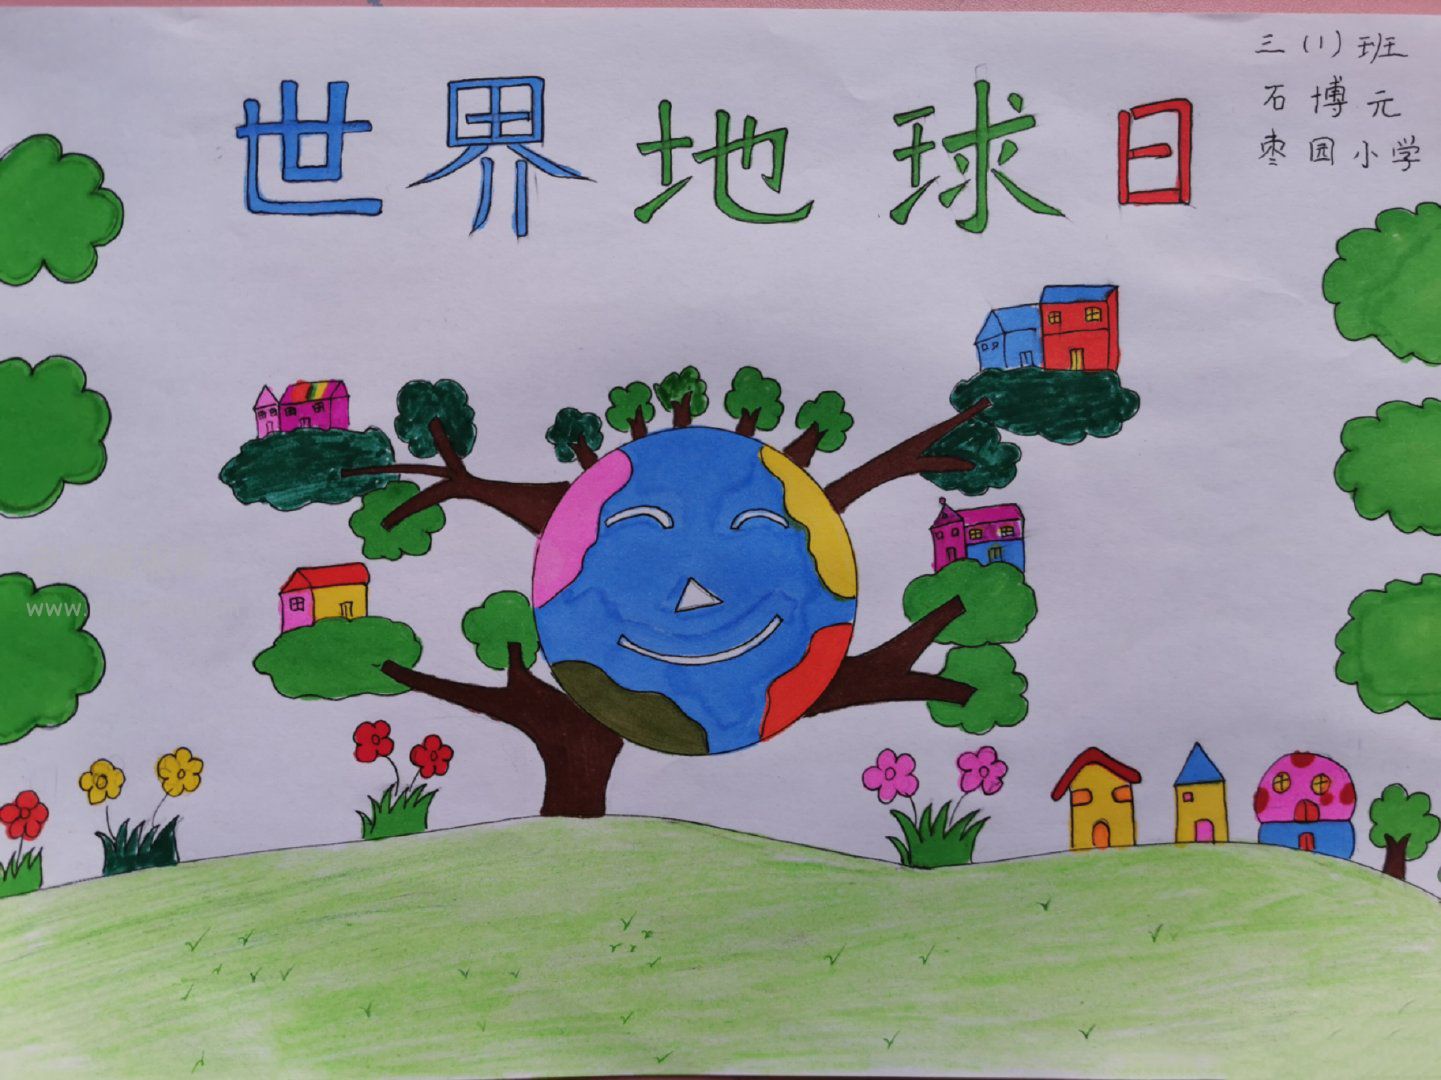 世界地球日儿童画公益大赛获奖作品出炉 | 世界地球日_新浪财经_新浪网